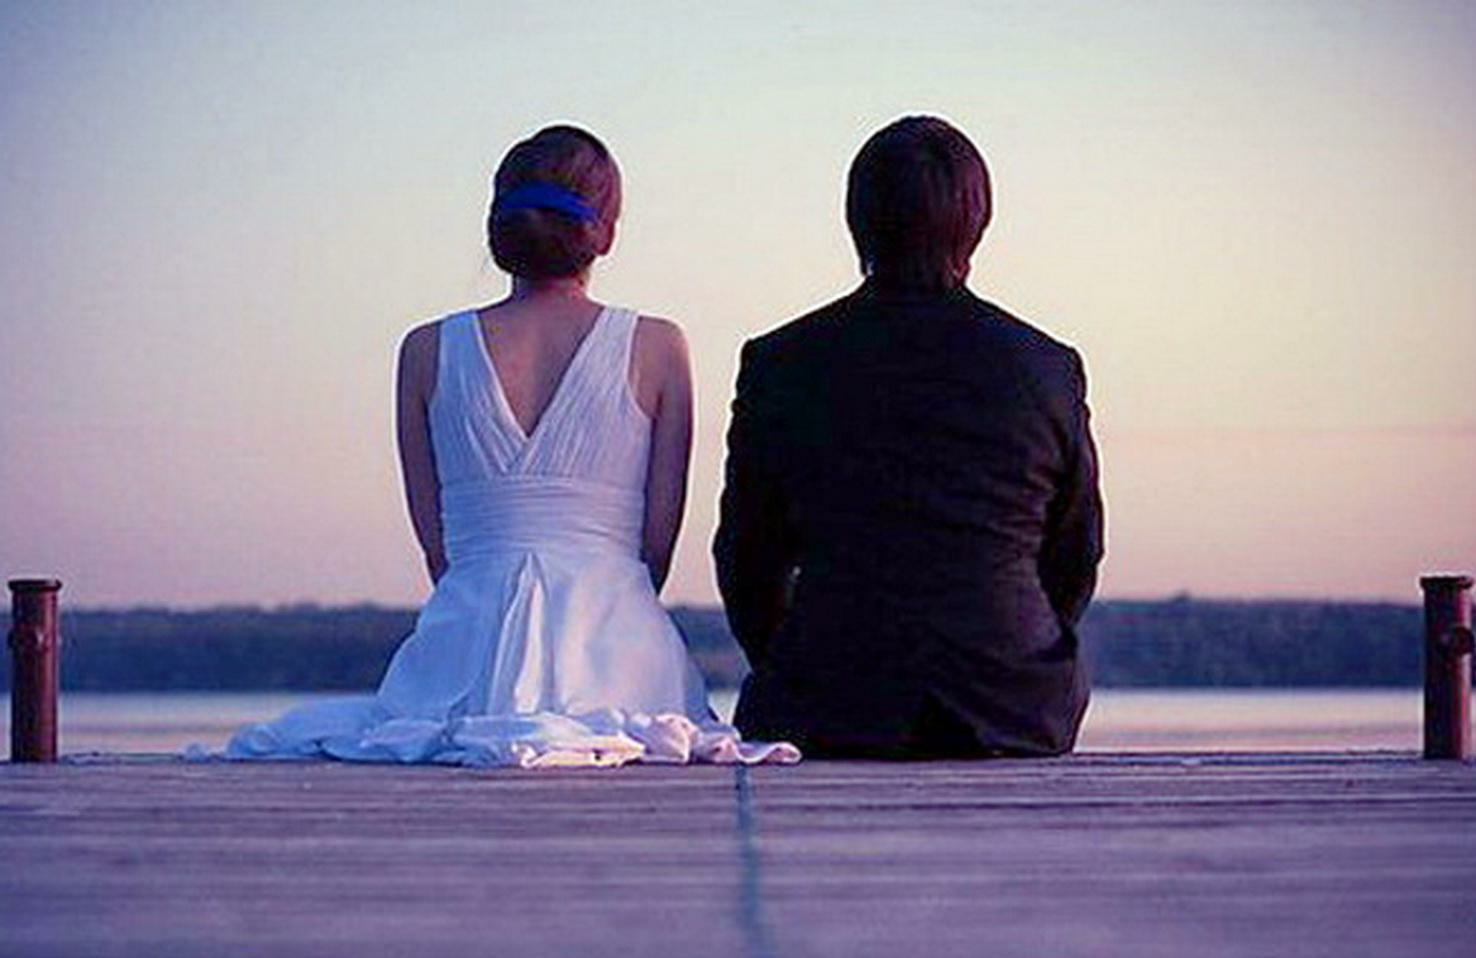 Молчание в разговоре. Спина к спине. Одиночество вместе. Спиной друг к другу. Мужчина и женщина сидят рядом.